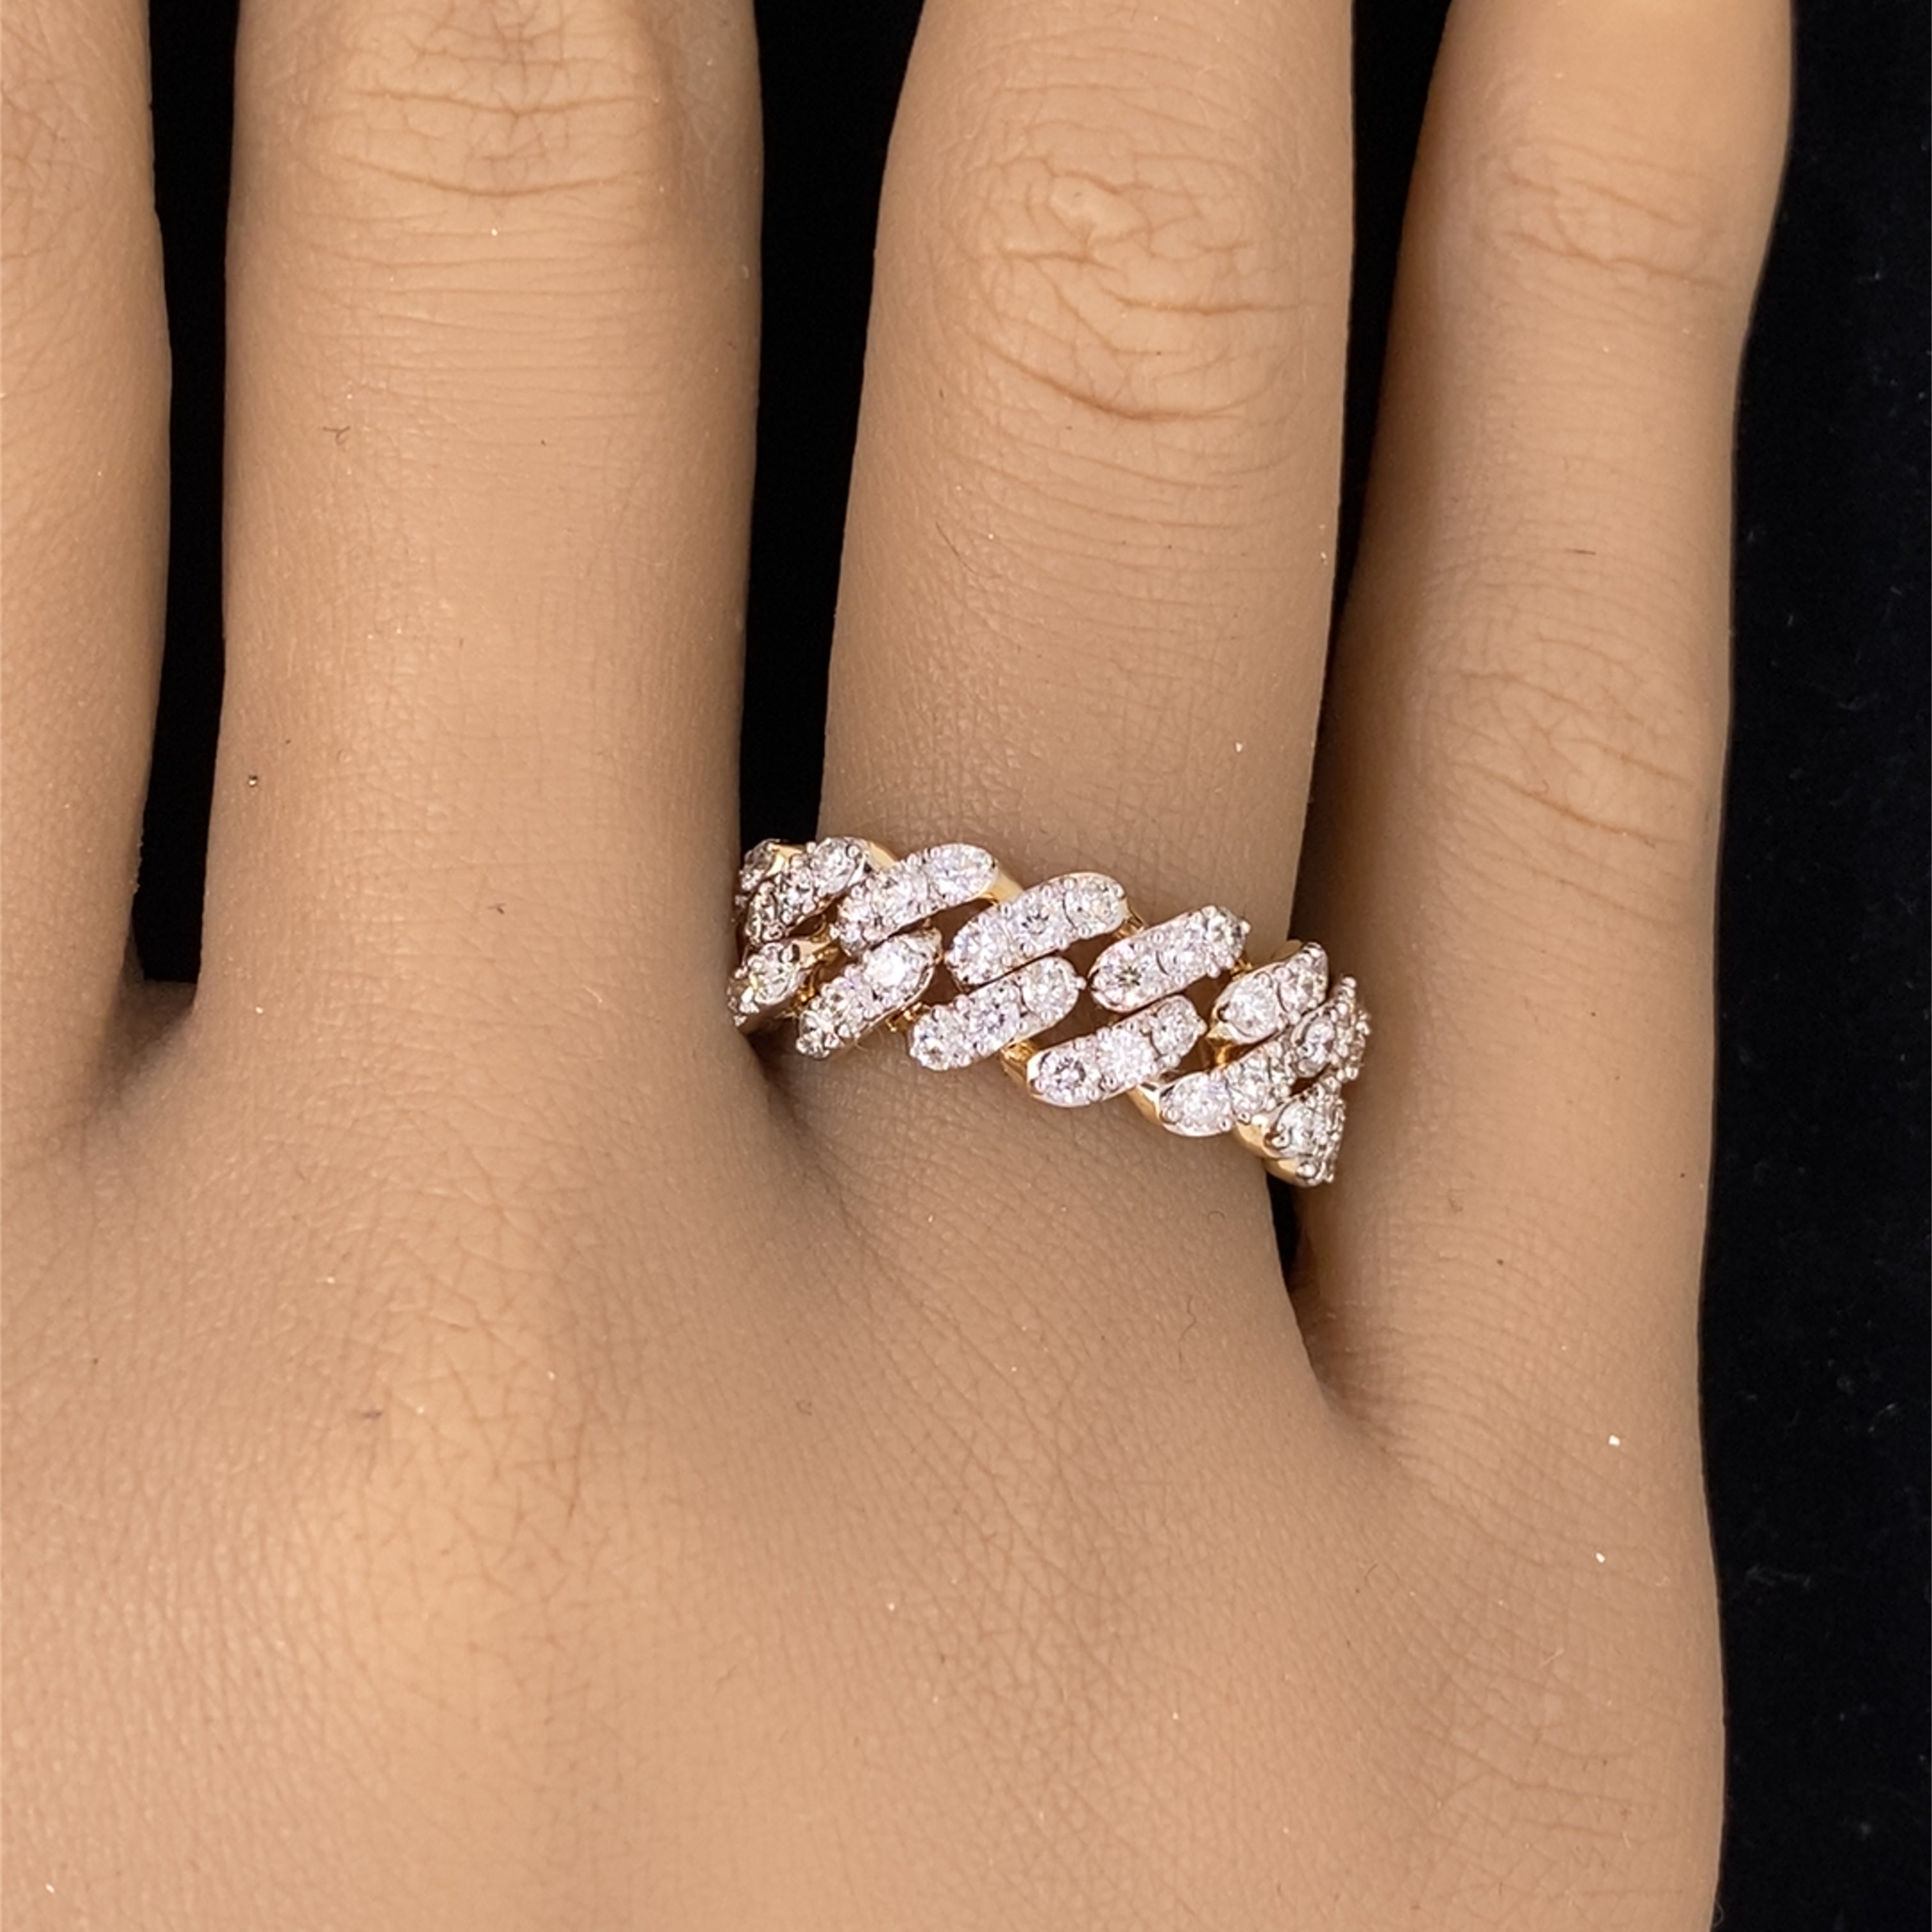 Gold 14k Diamond Engagement Rings for sale | eBay